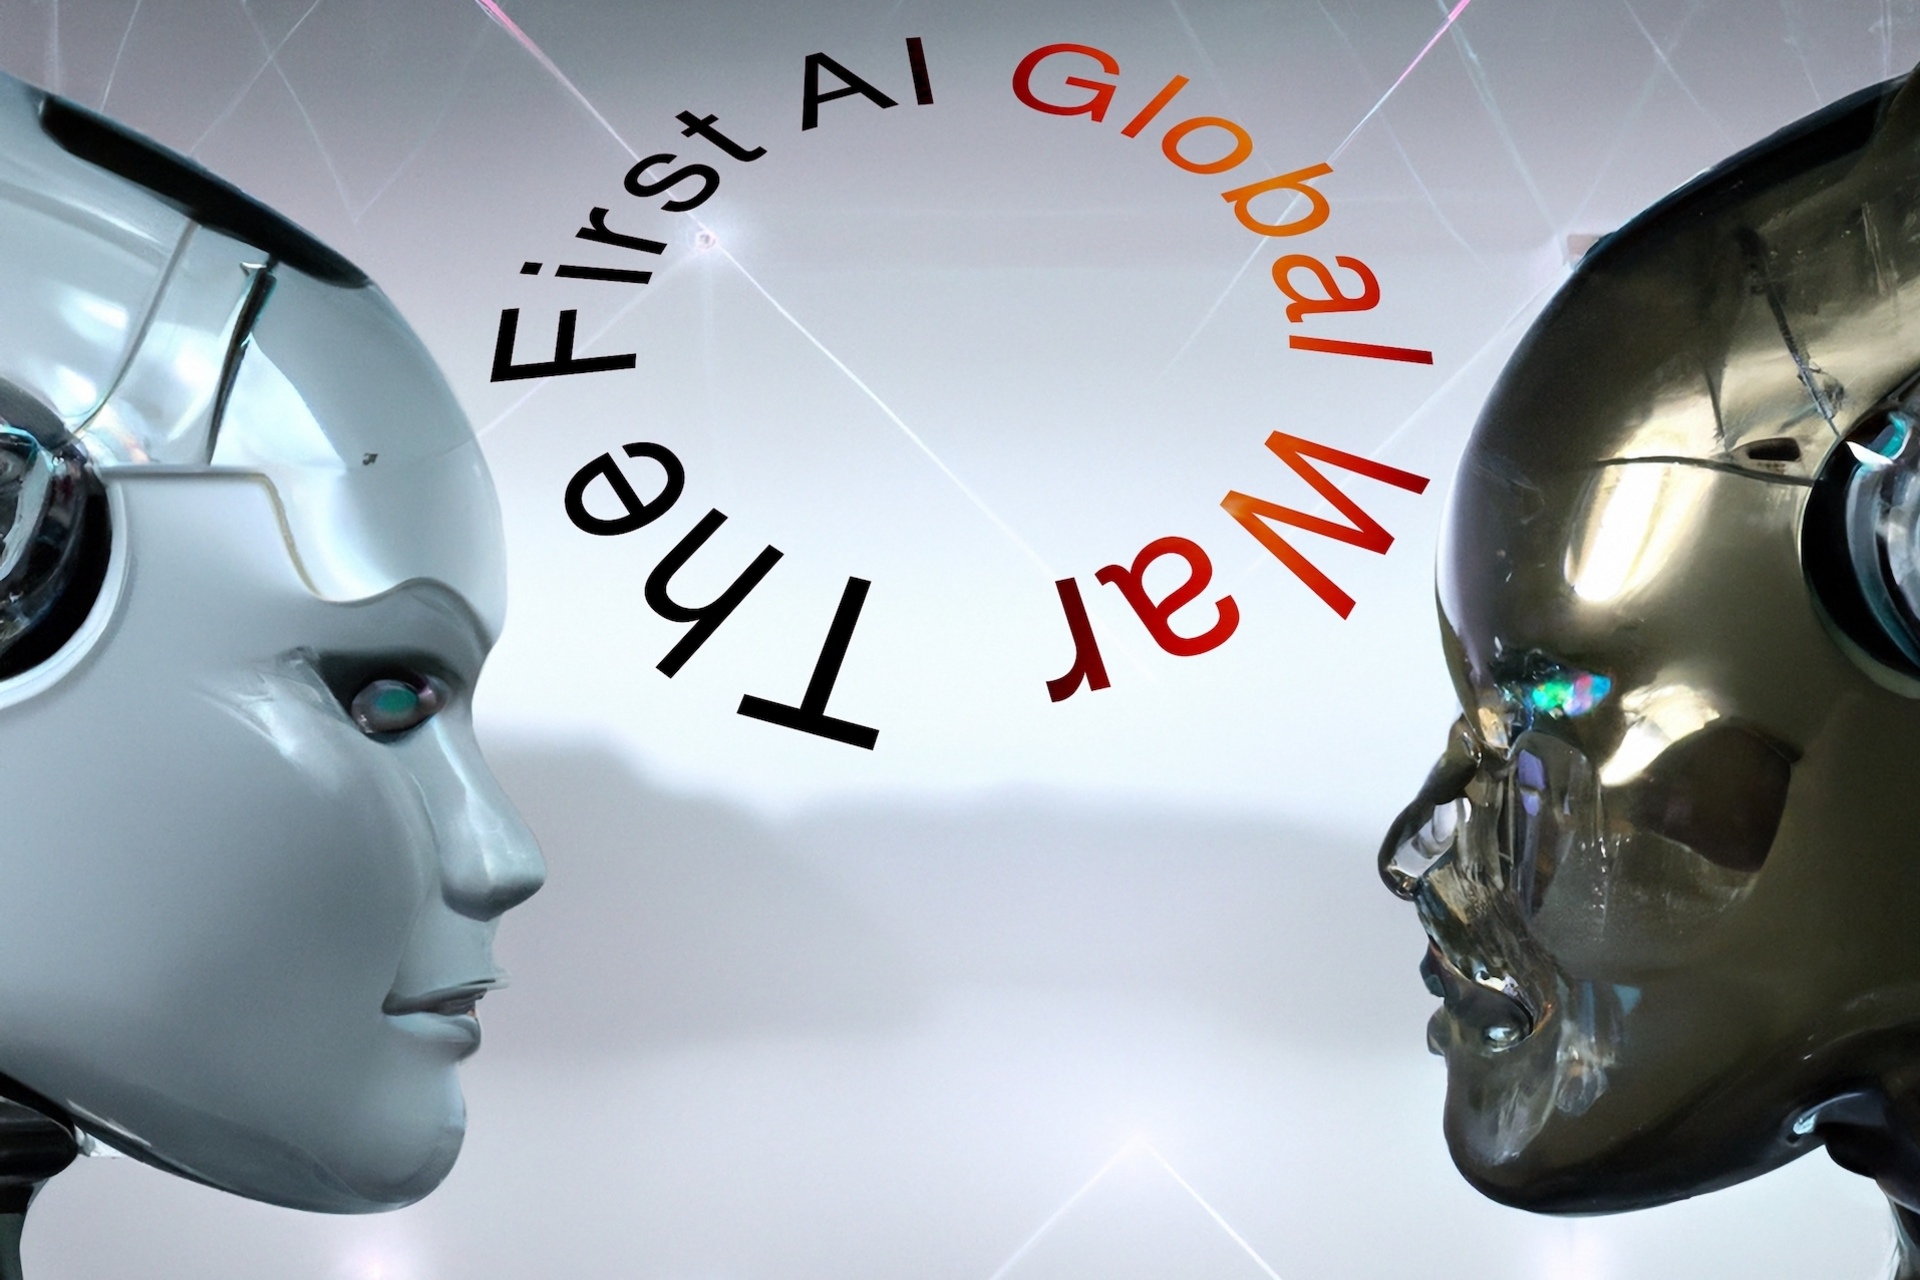 Intelligence Artificielle : une représentation artistique de la "First AI Global War", littéralement la "Première Guerre Mondiale de l'Intelligence Artificielle", créée par l'auteur de l'article avec Dall-E